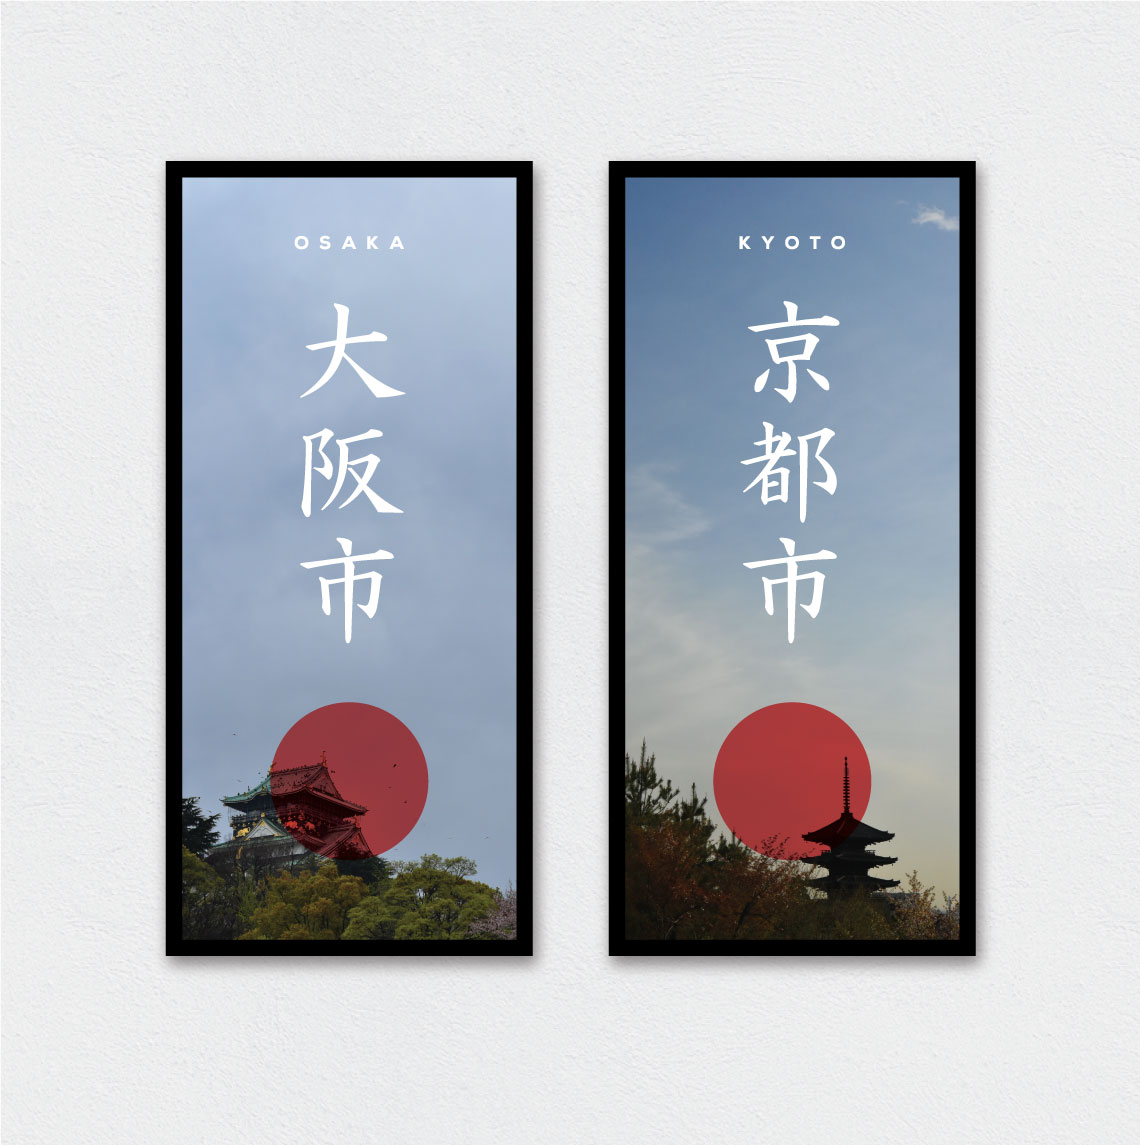 Japan vacation posters larger version. Osaka and Kyoto.